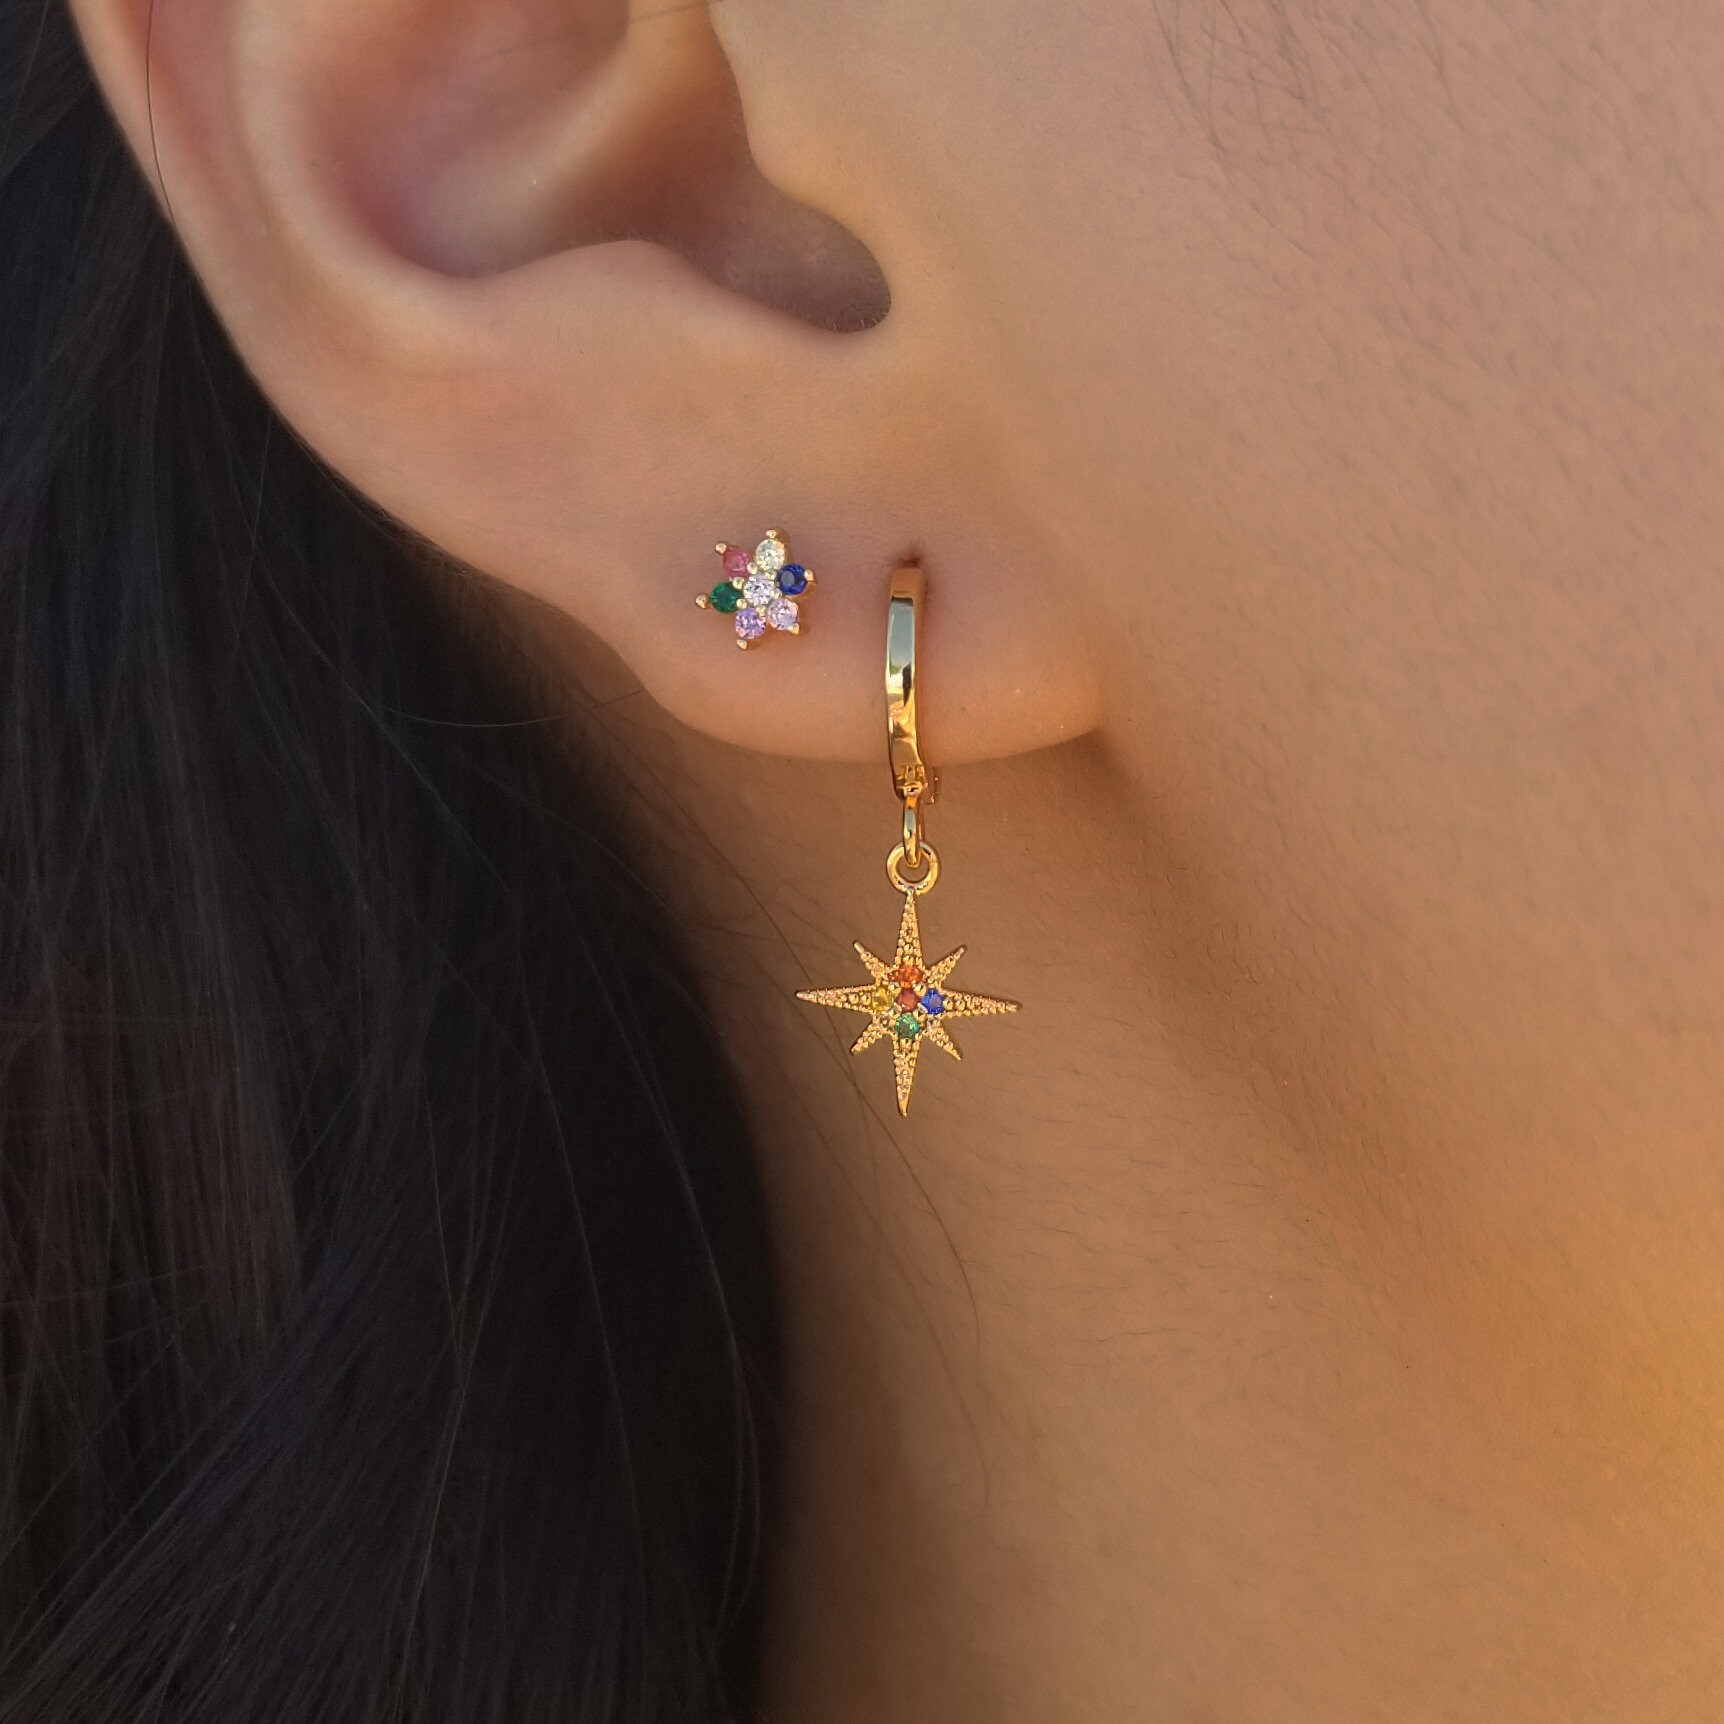 Celestial Drop Hoops MARYAM EARRINGS Tiny Star Earrings Tiny Earrings Rainbow Earrings Star Huggie Hoops Dainty Gold Huugie Hoops